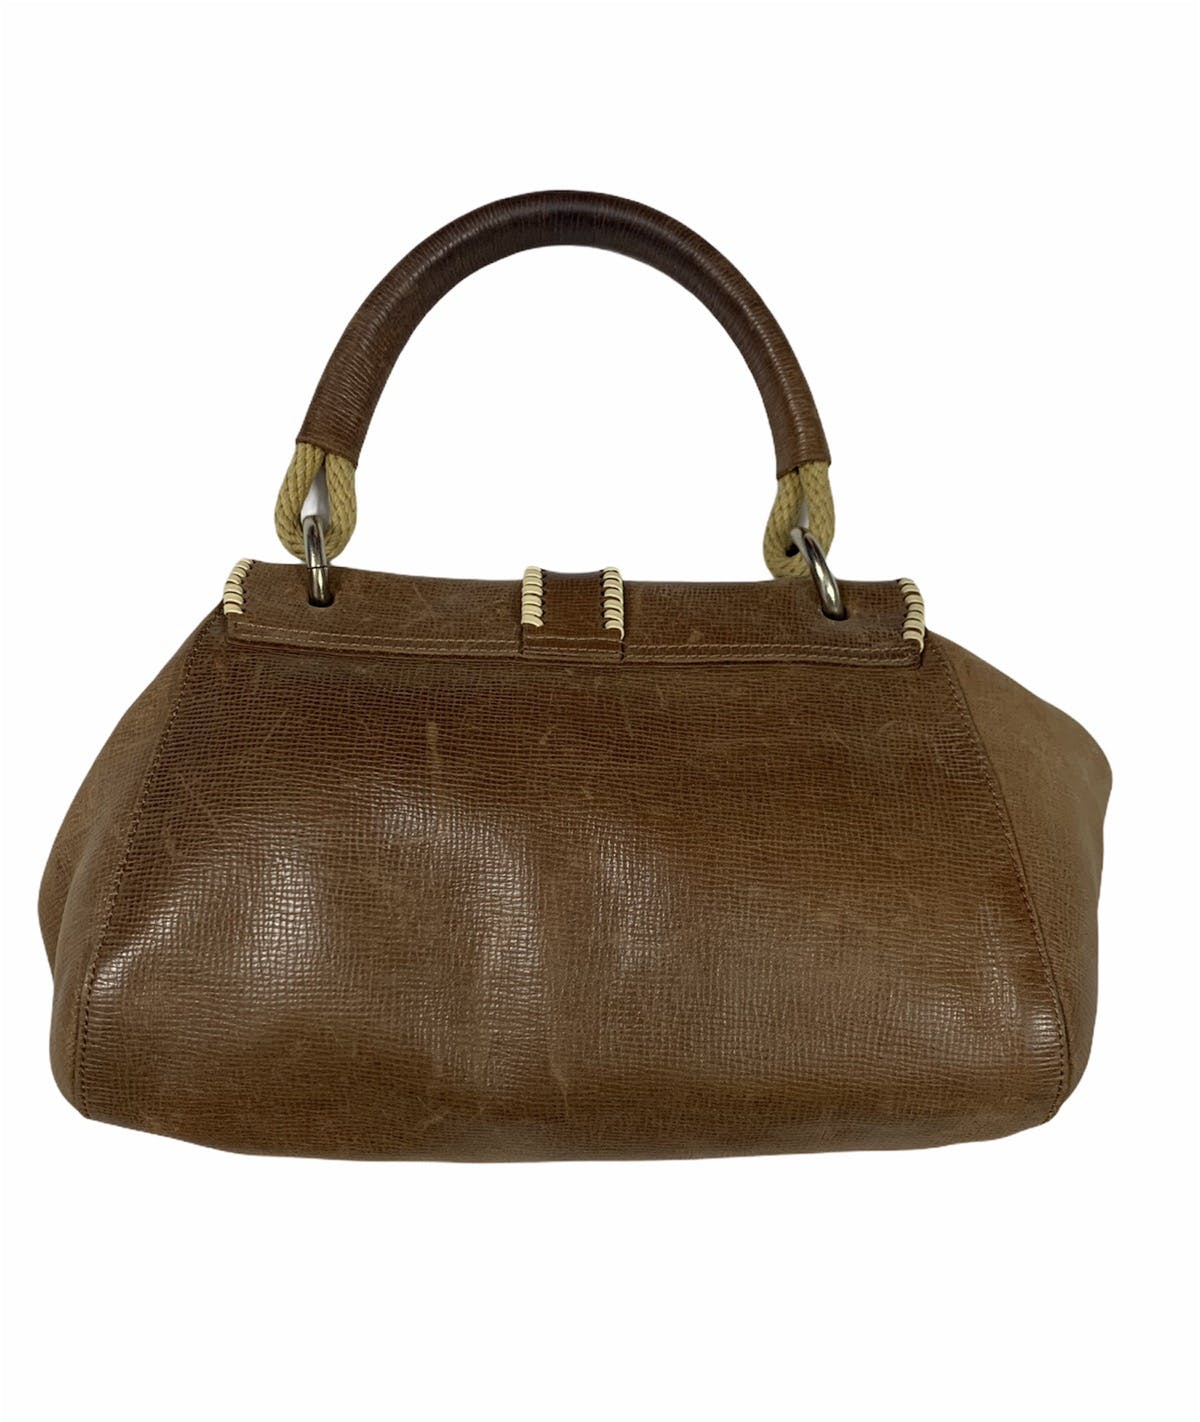 Marni leather handbag - 2